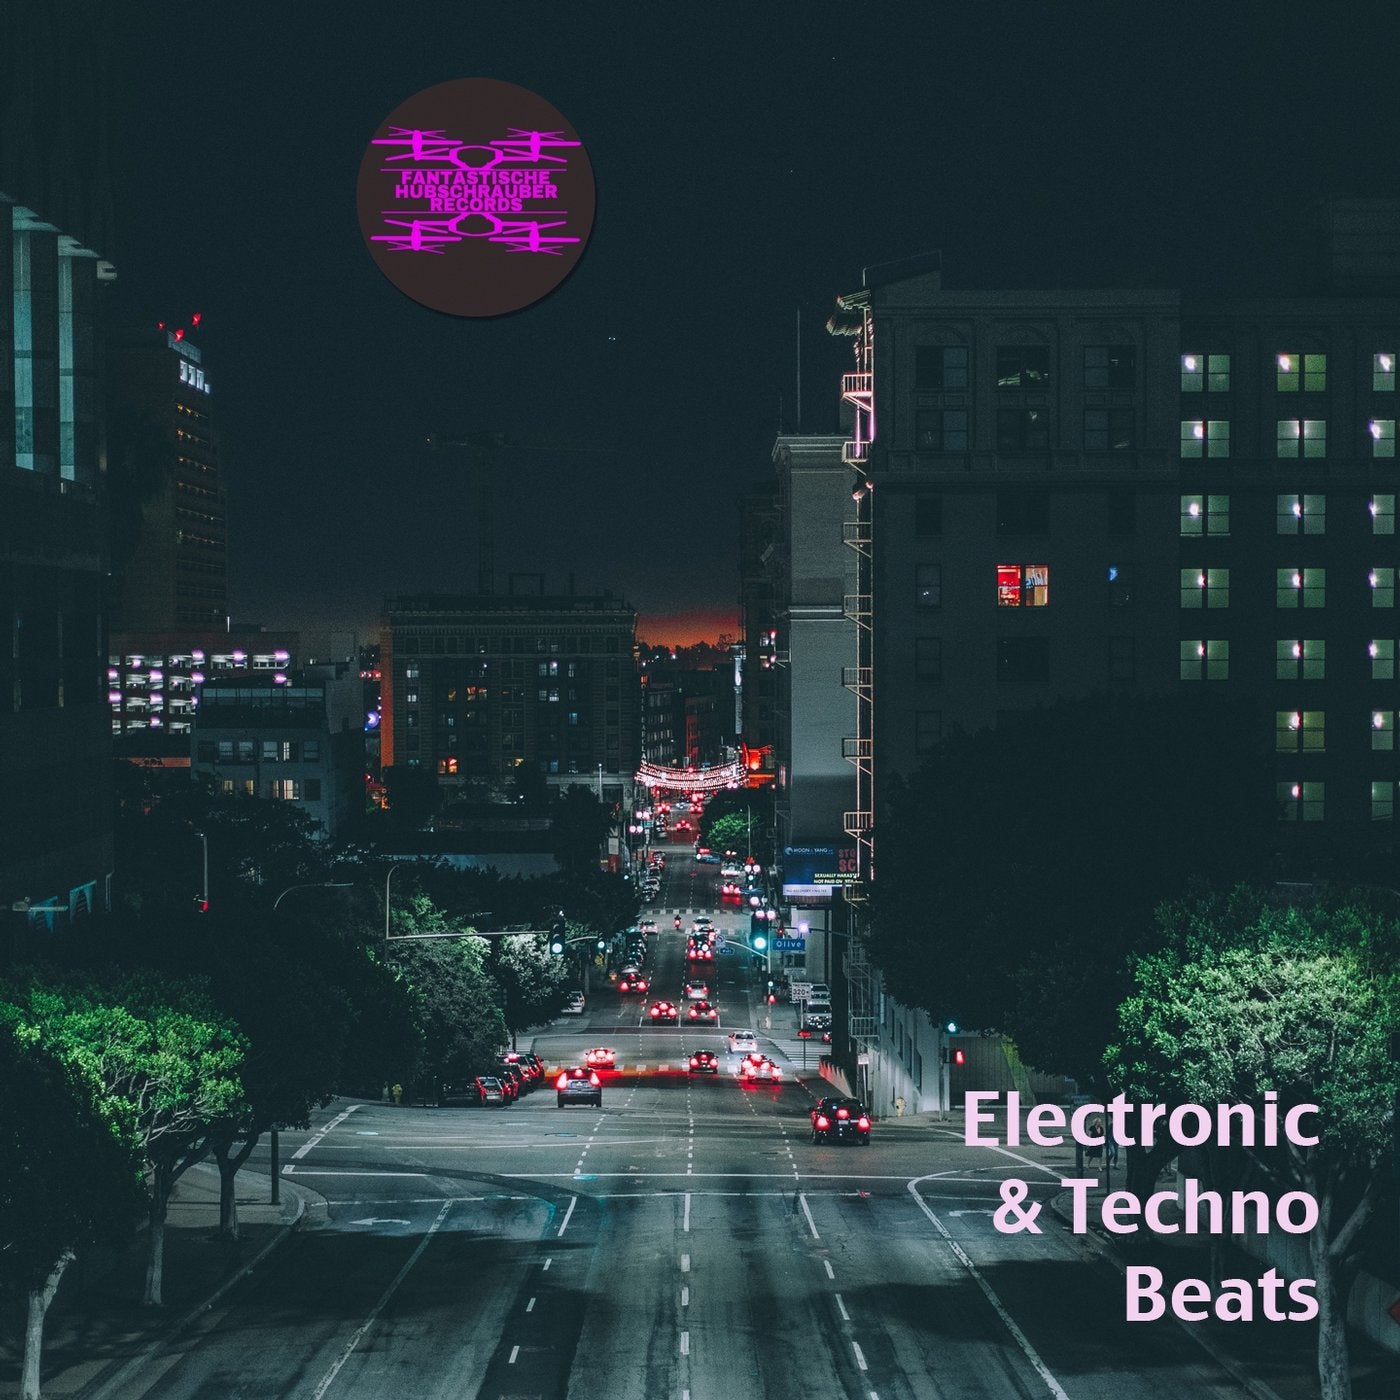 Electronic & Techno Beats